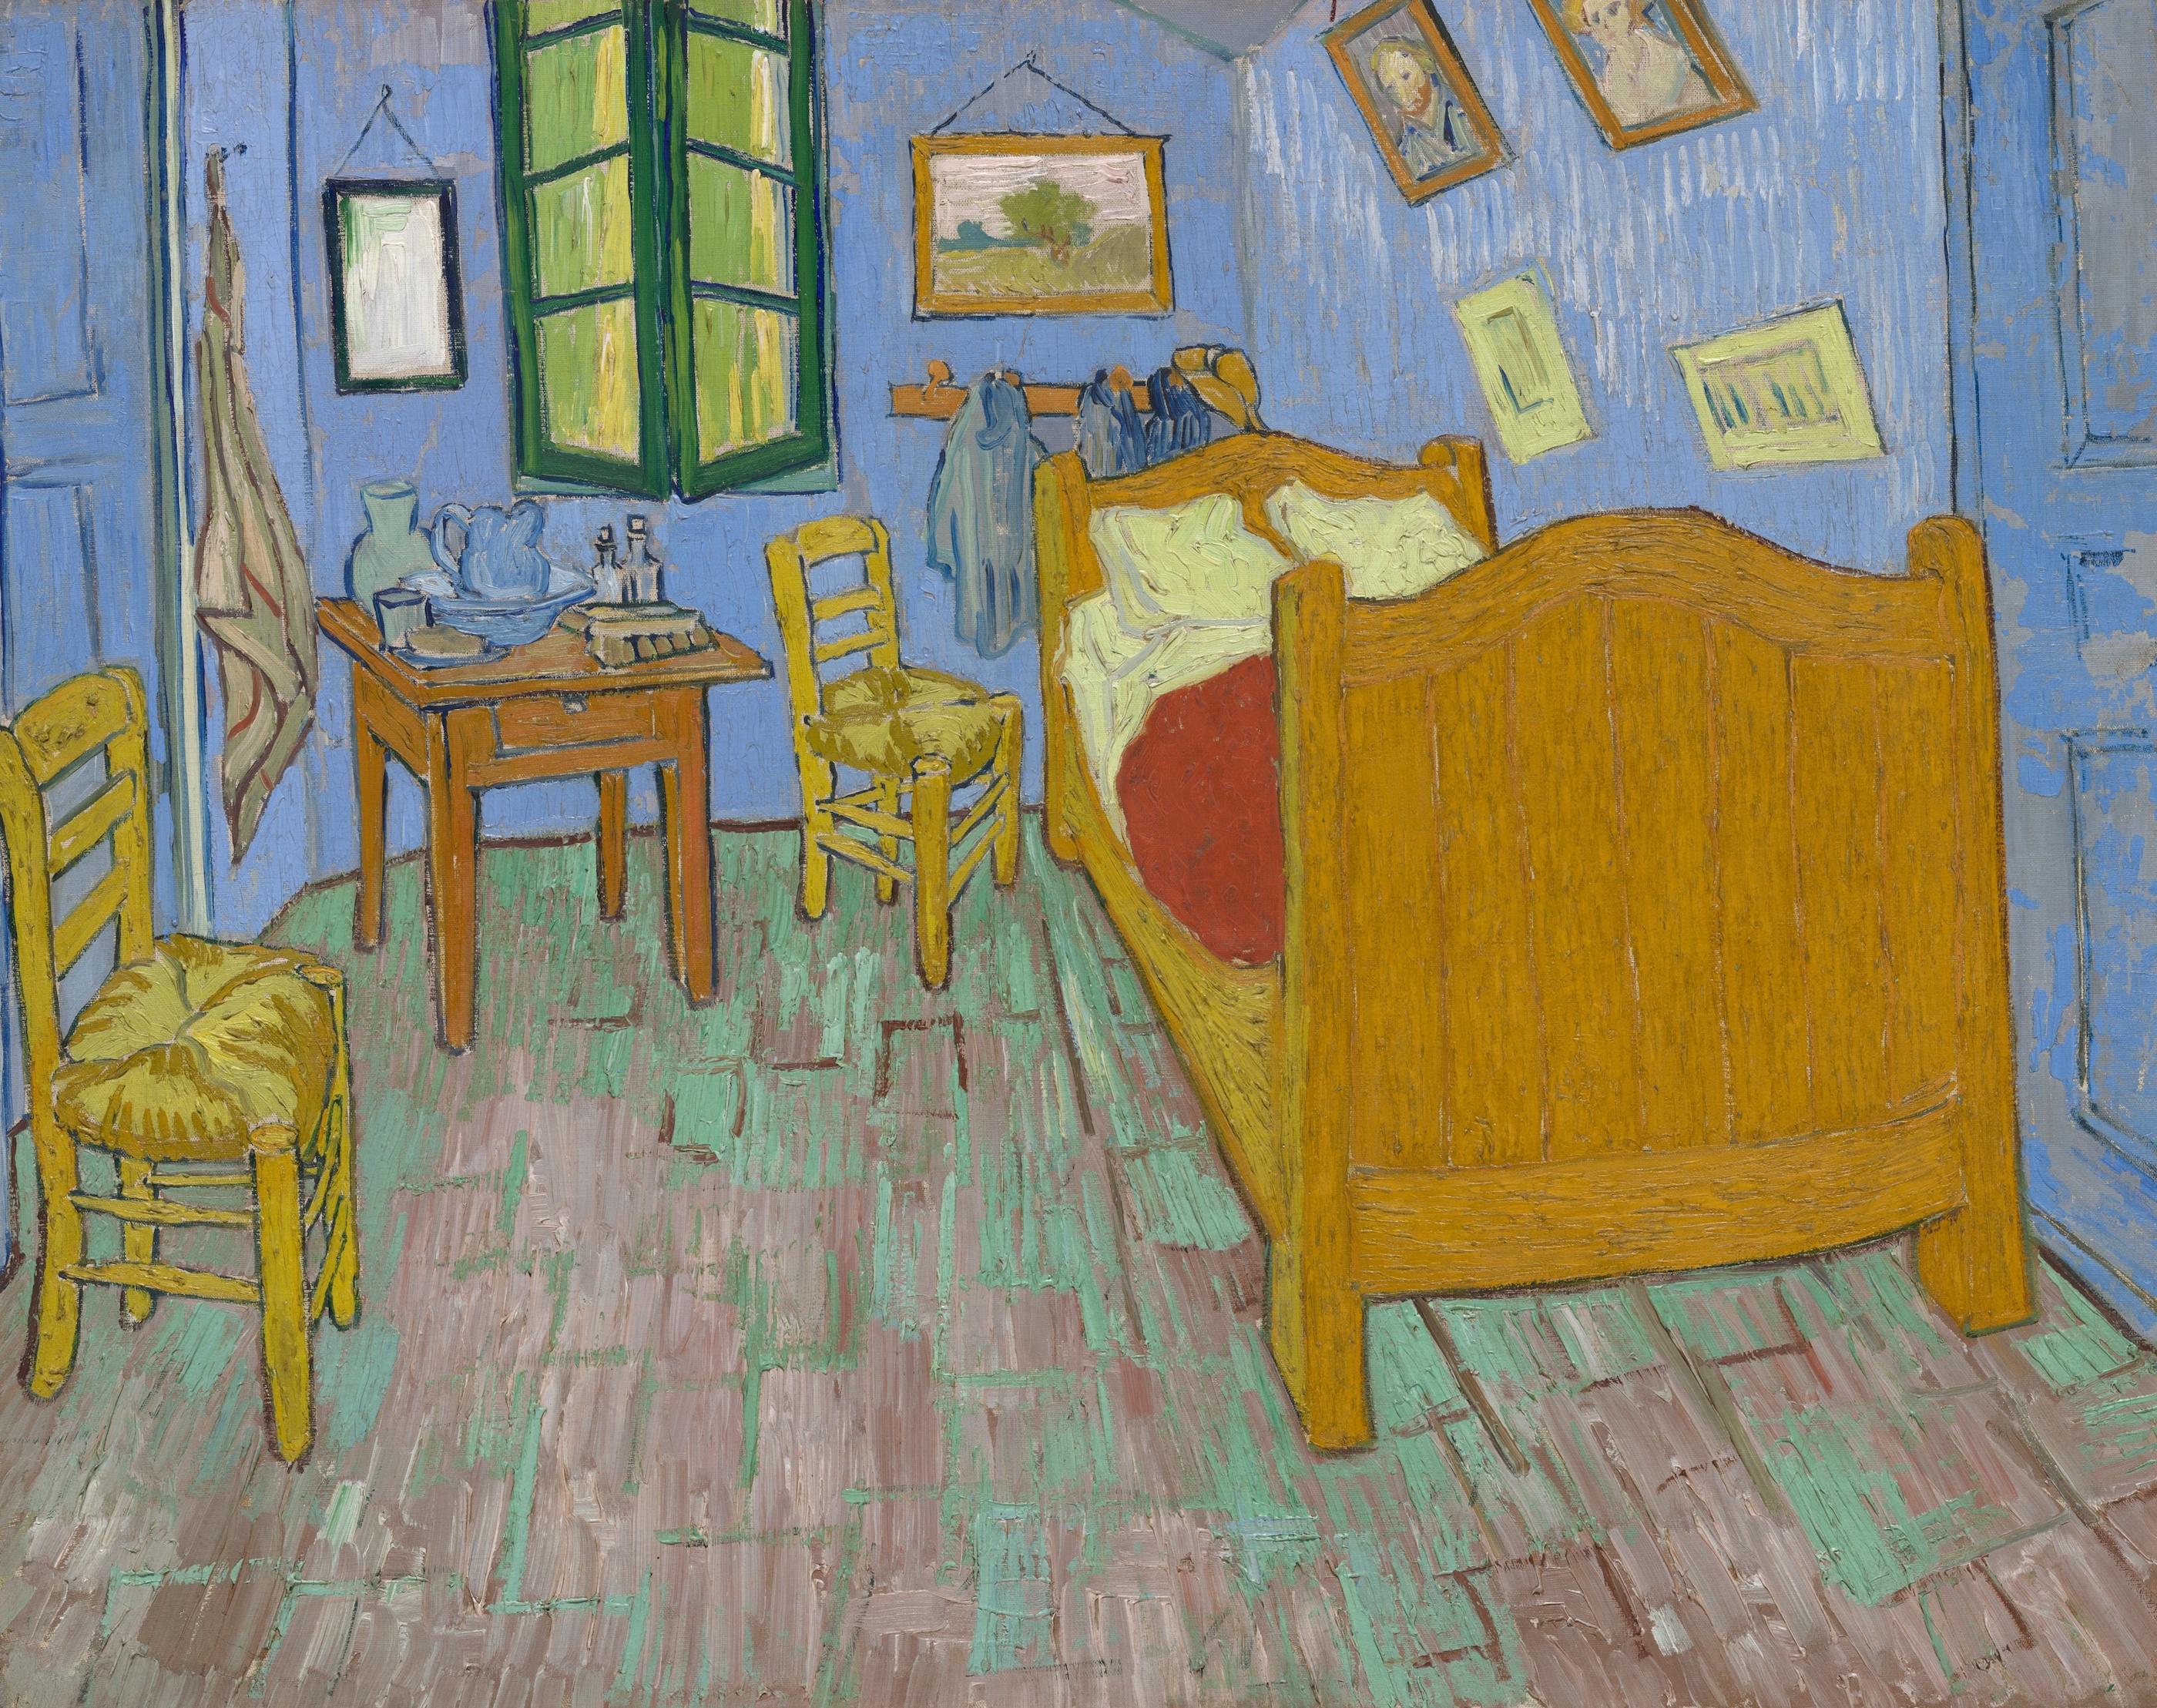 Спальня (The Bedroom) by Винсе́нт Виллем Ван Гог - 1889 г. - 73,6 × 92,3 см 